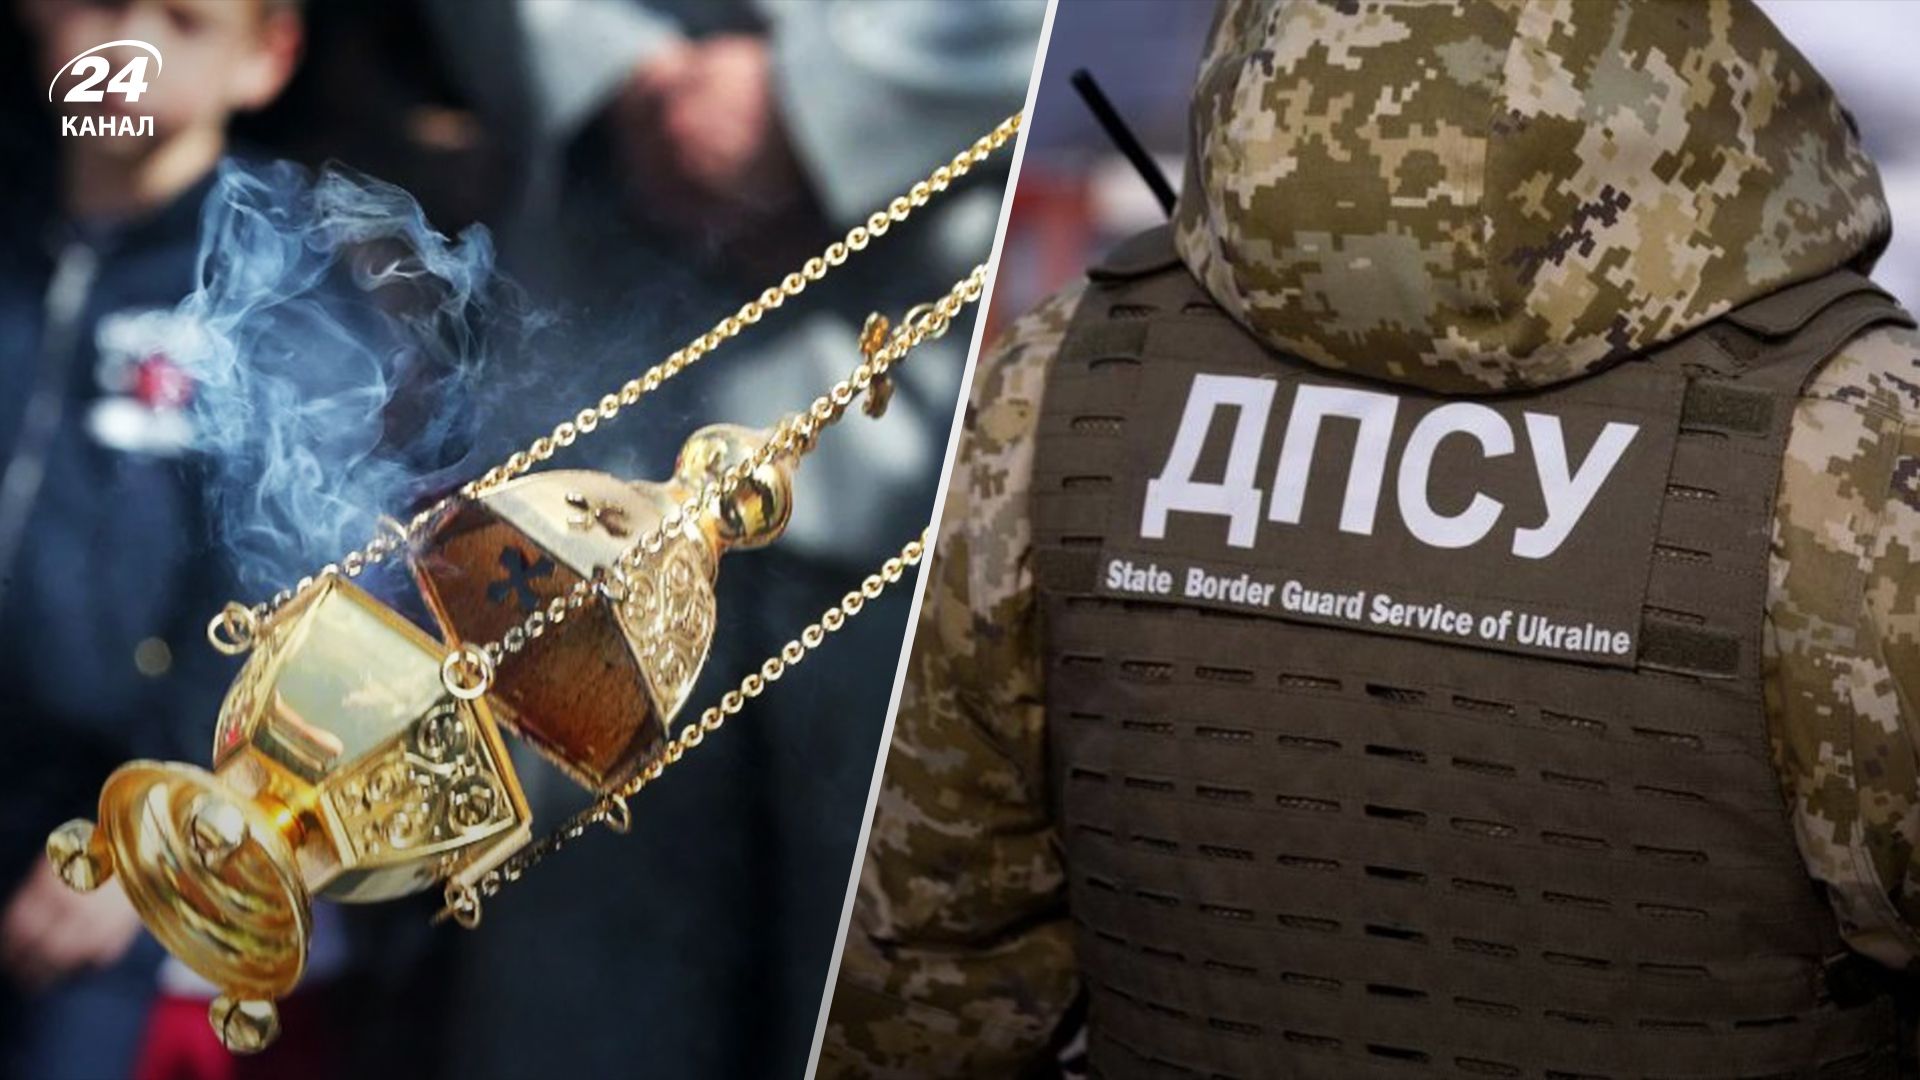 "Вообще рамсы попутали": на въезде в Киев задержали пьяного батюшку УПЦ МП - 24 Канал